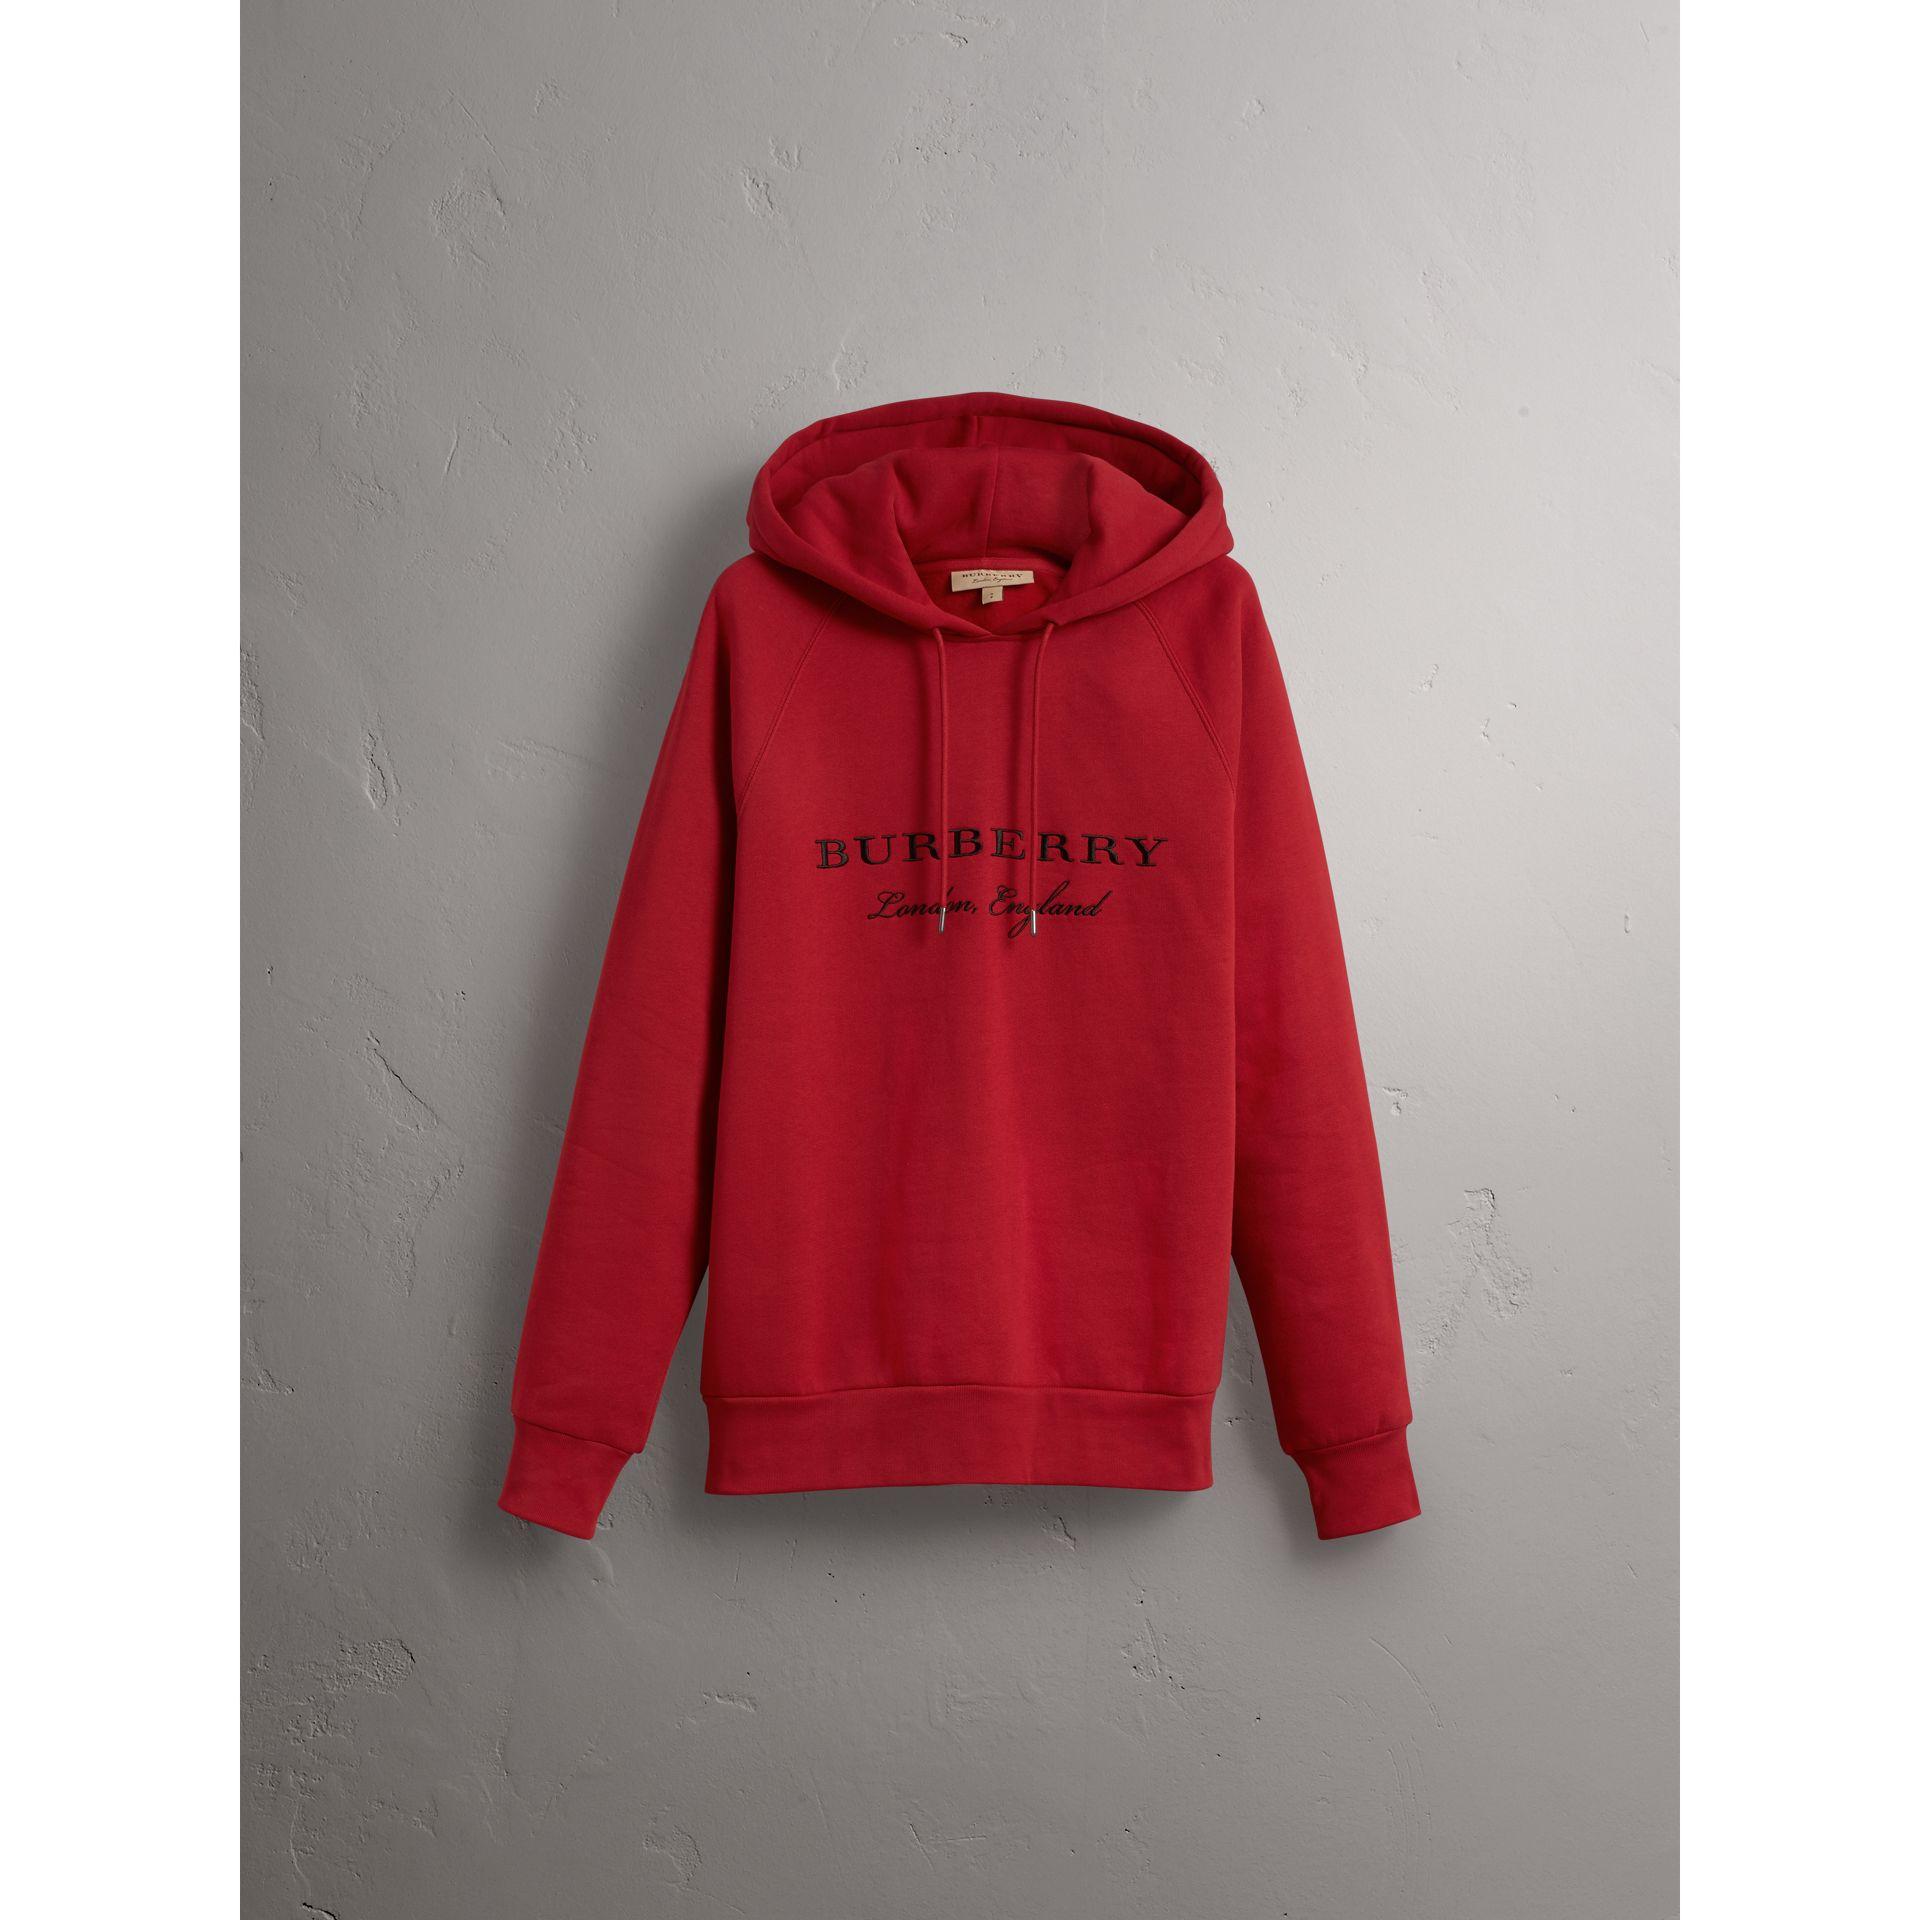 red burberry hoodie mens